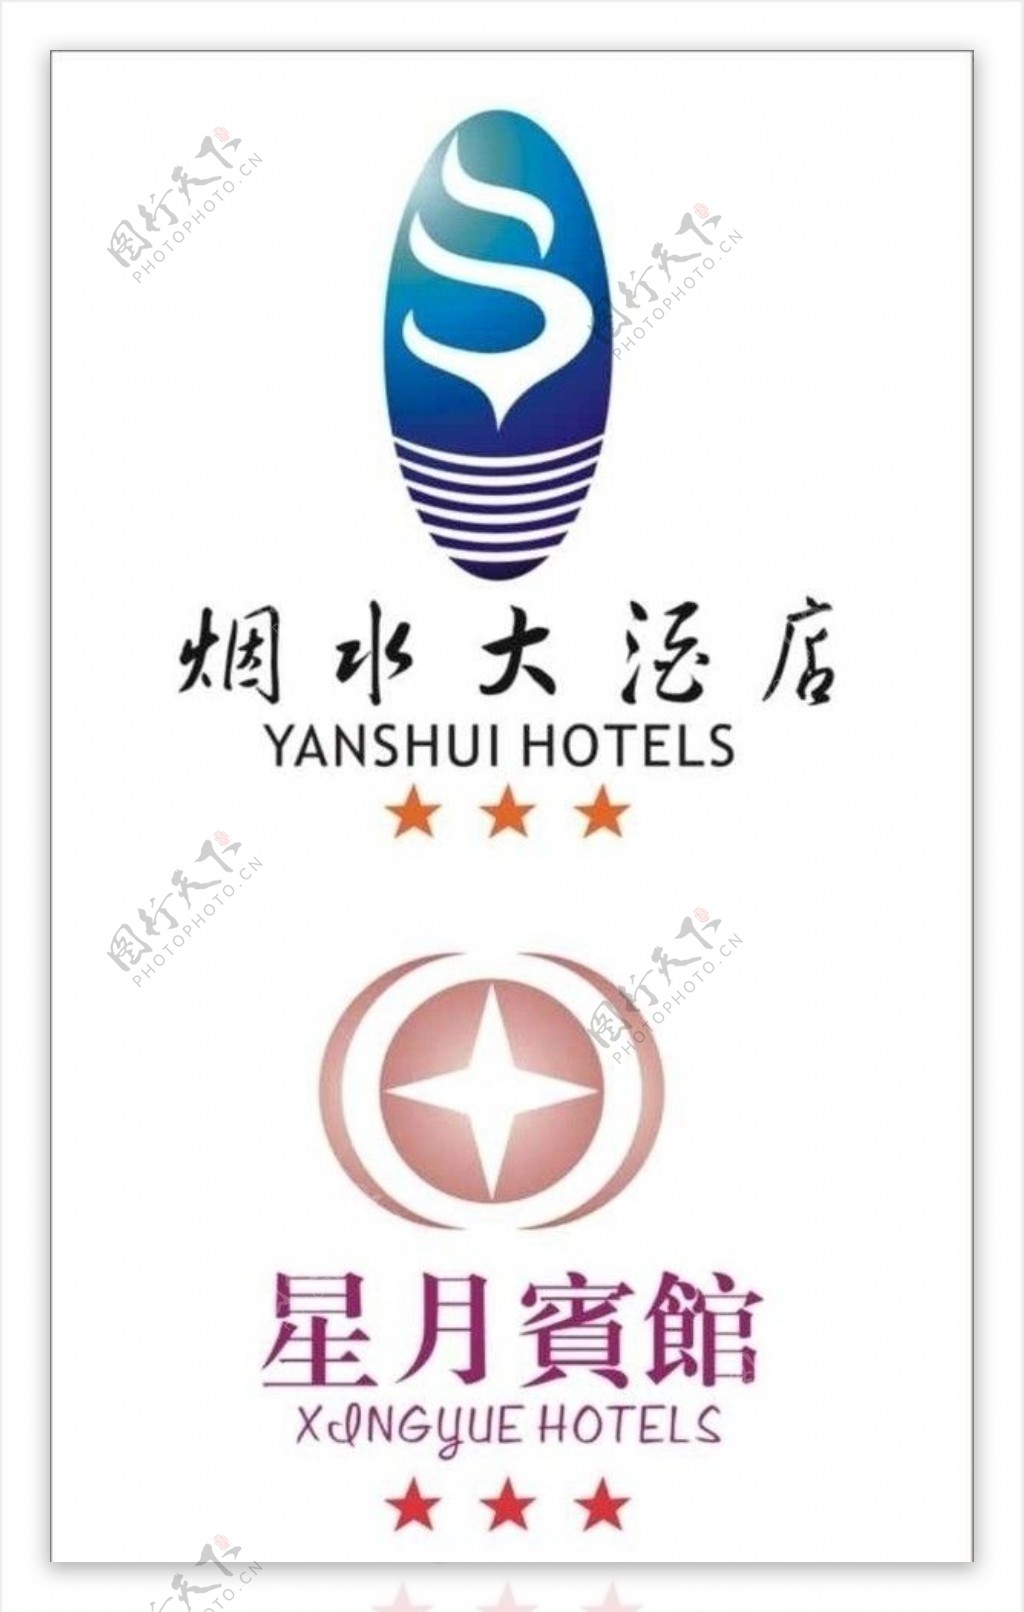 两个三星级酒店标志设计图片